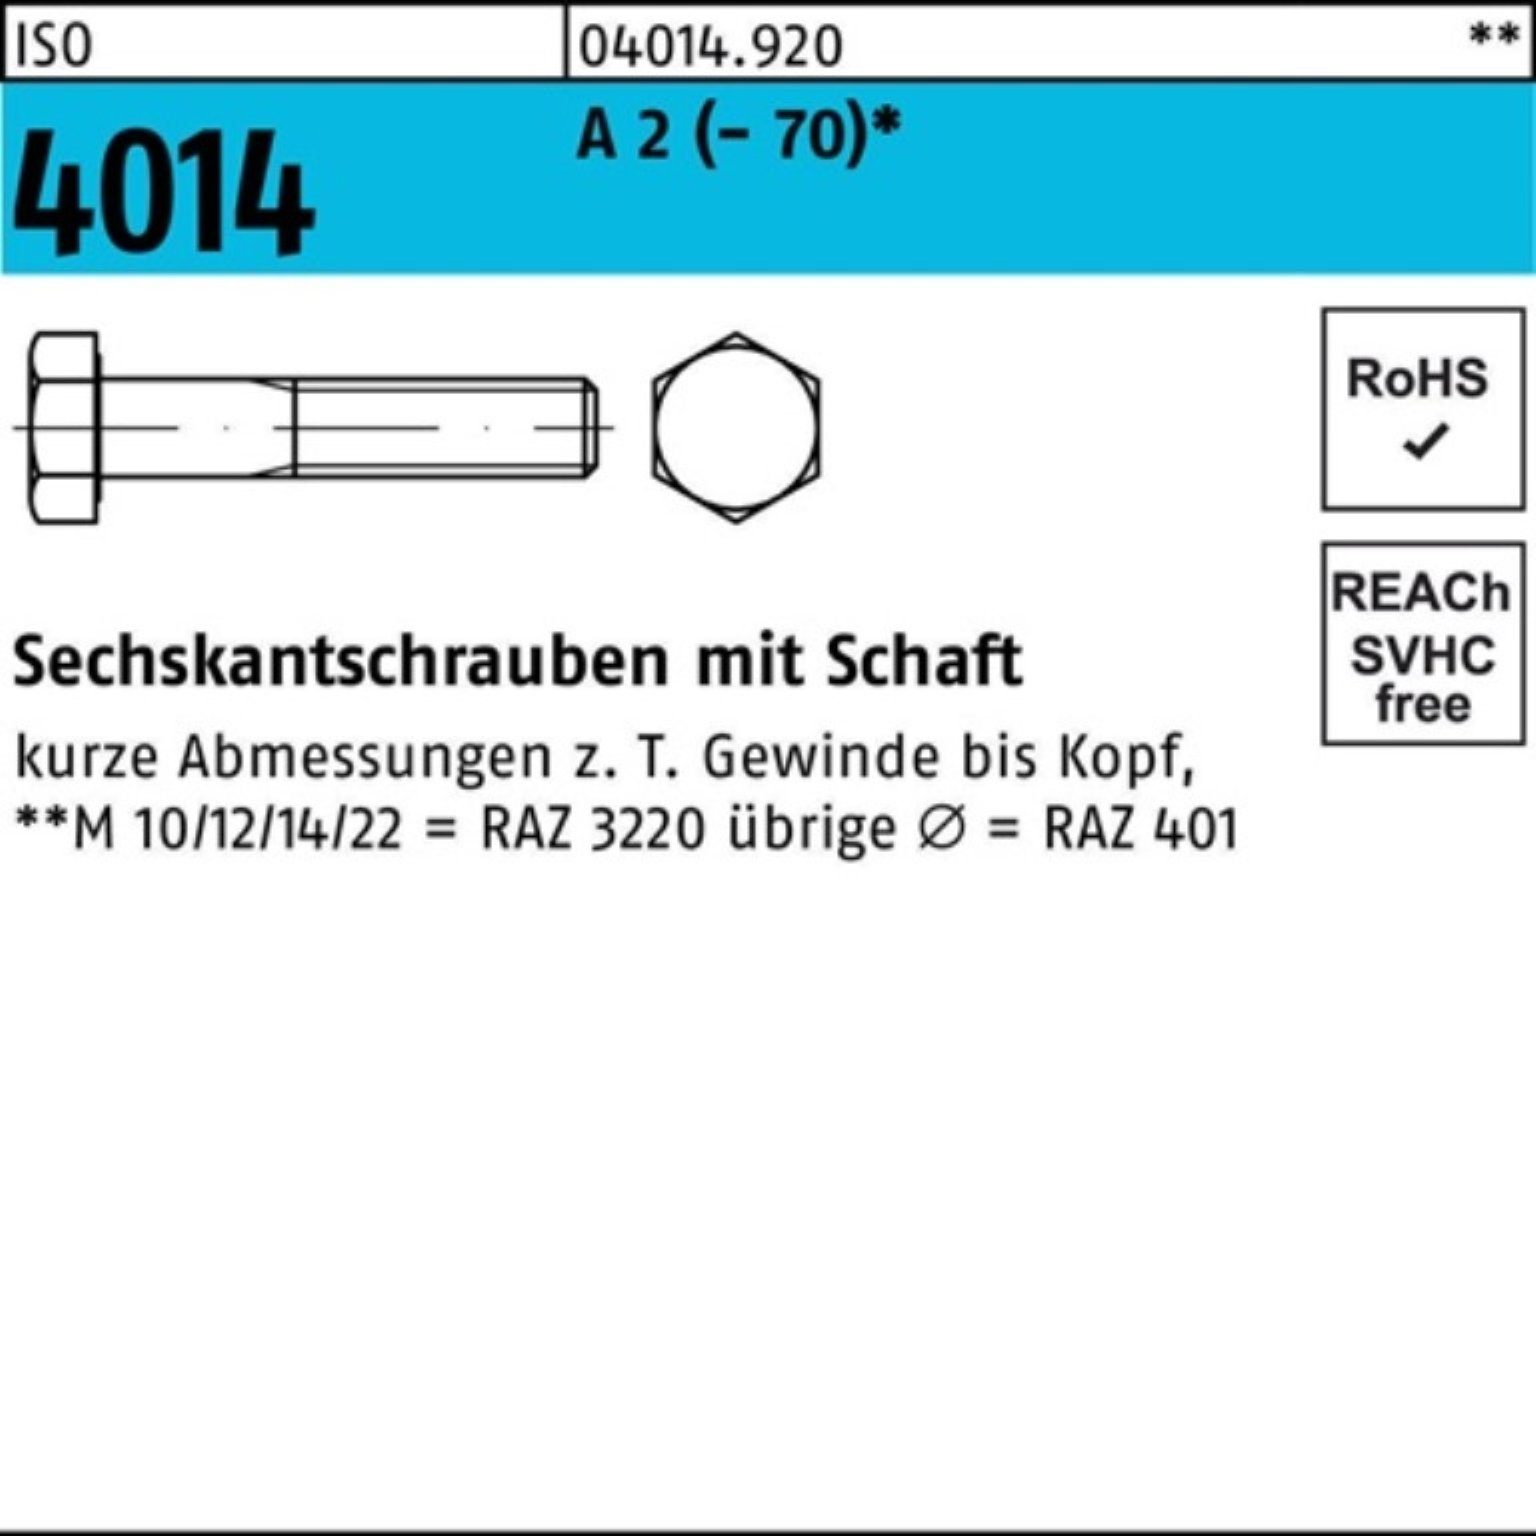 Bufab Sechskantschraube 100er Pack Sechskantschraube ISO 4014 Schaft M10x 180 A 2 (70) 1 St